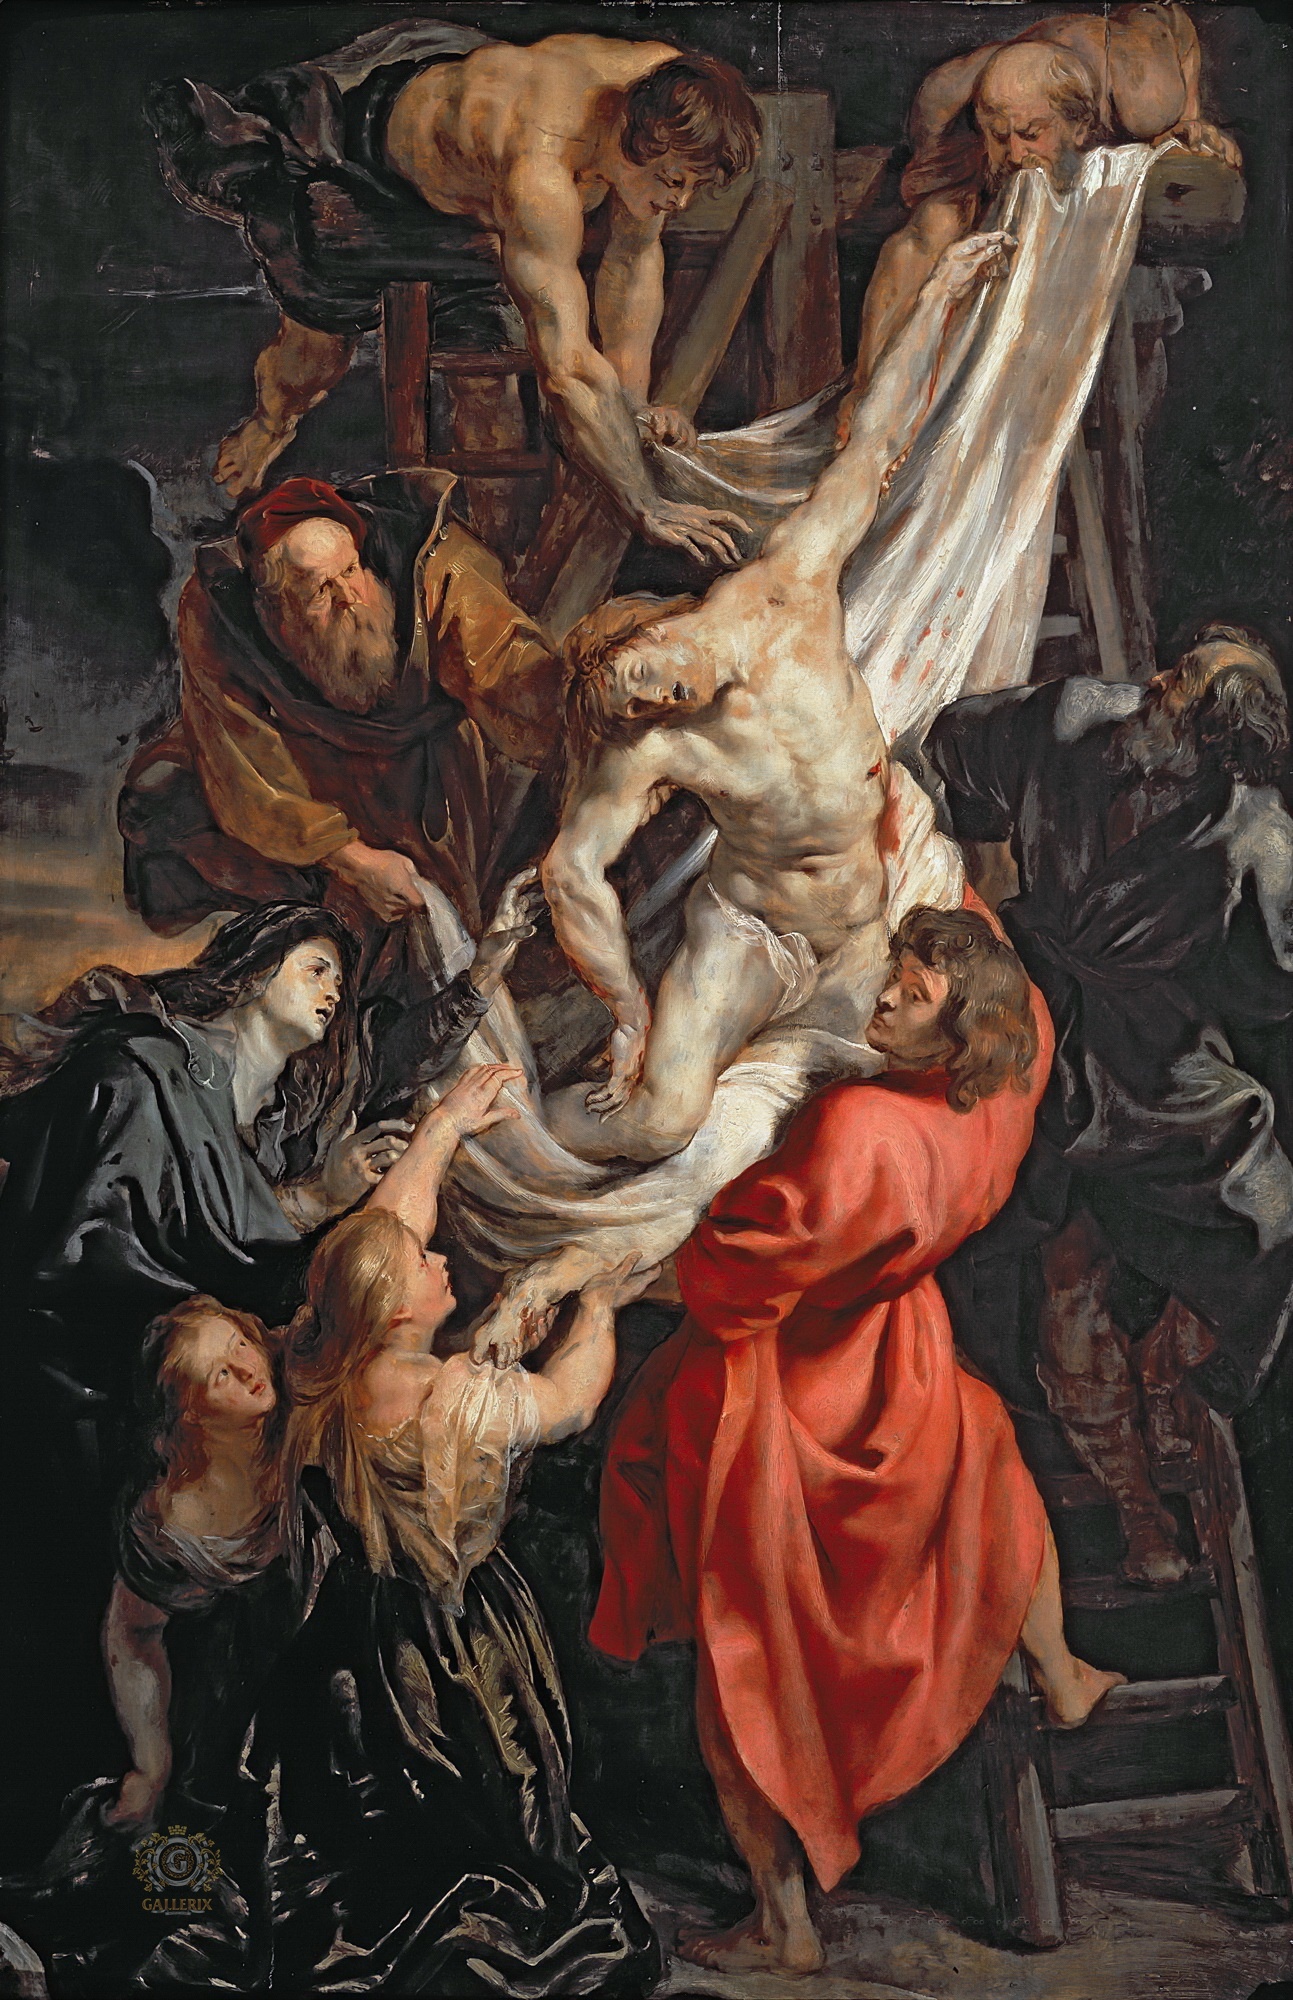 Питер Пауль Рубенс. "Снятие с креста". 1611. Институт искусств Курто, Лондон.